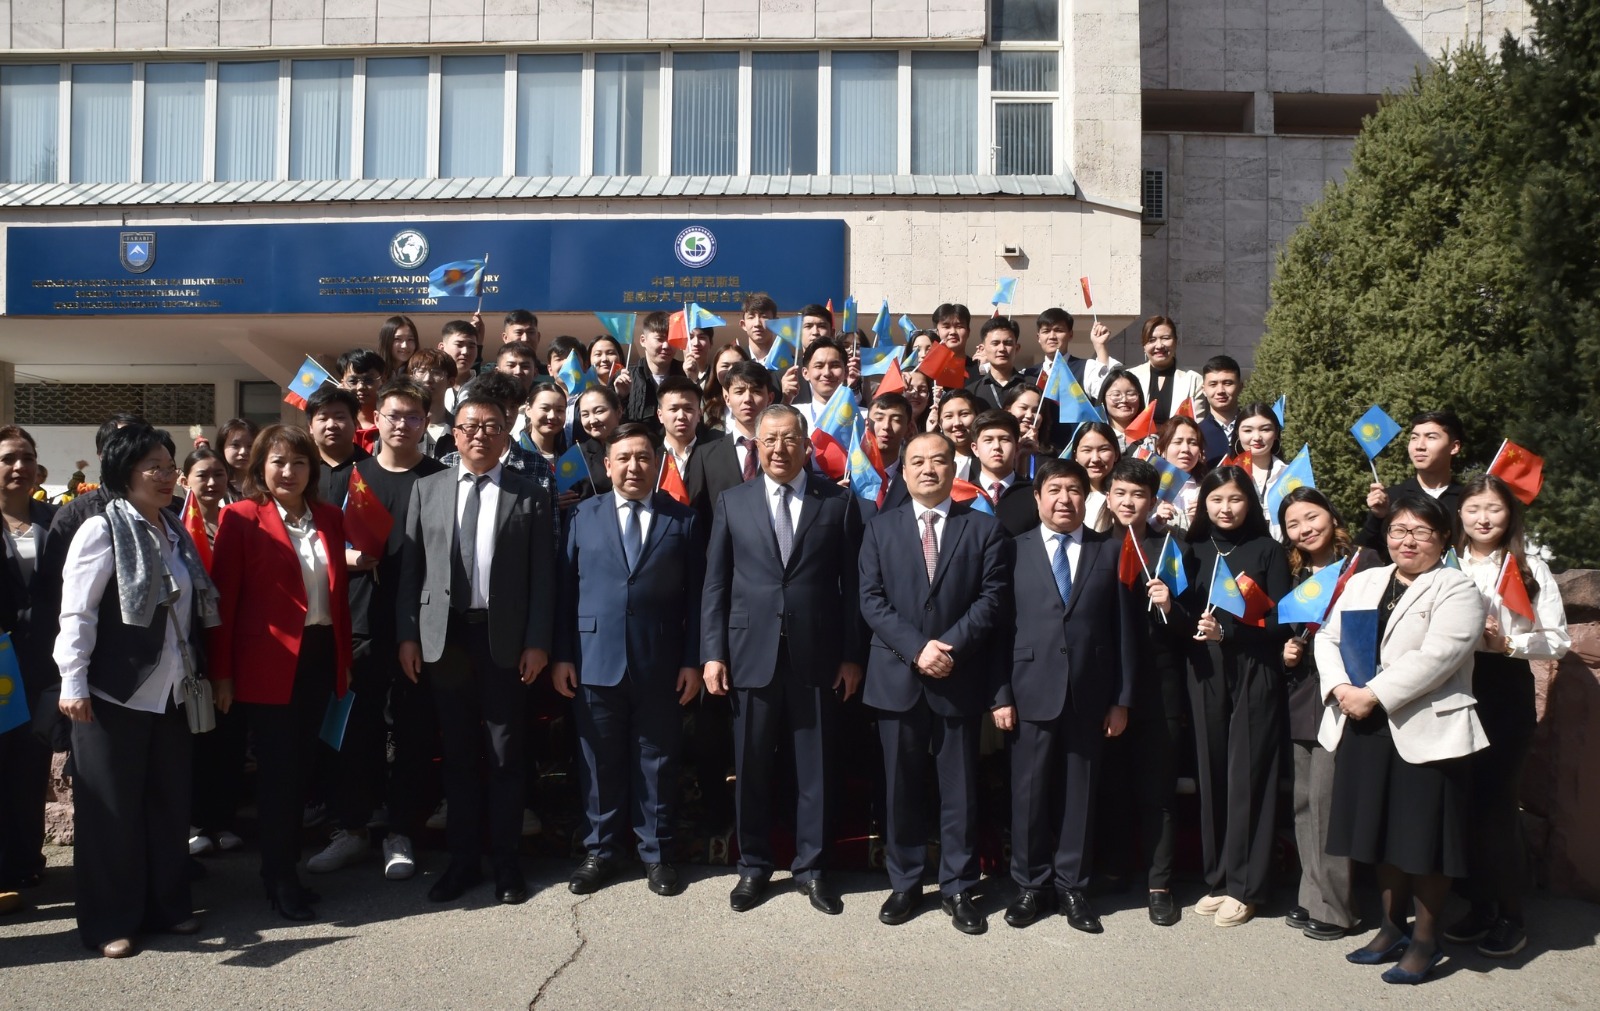 Kazakhstan-China joint laboratory "Remote Sensing Technology and Applications" was opened at Al-Farabi Kazakh National Universit